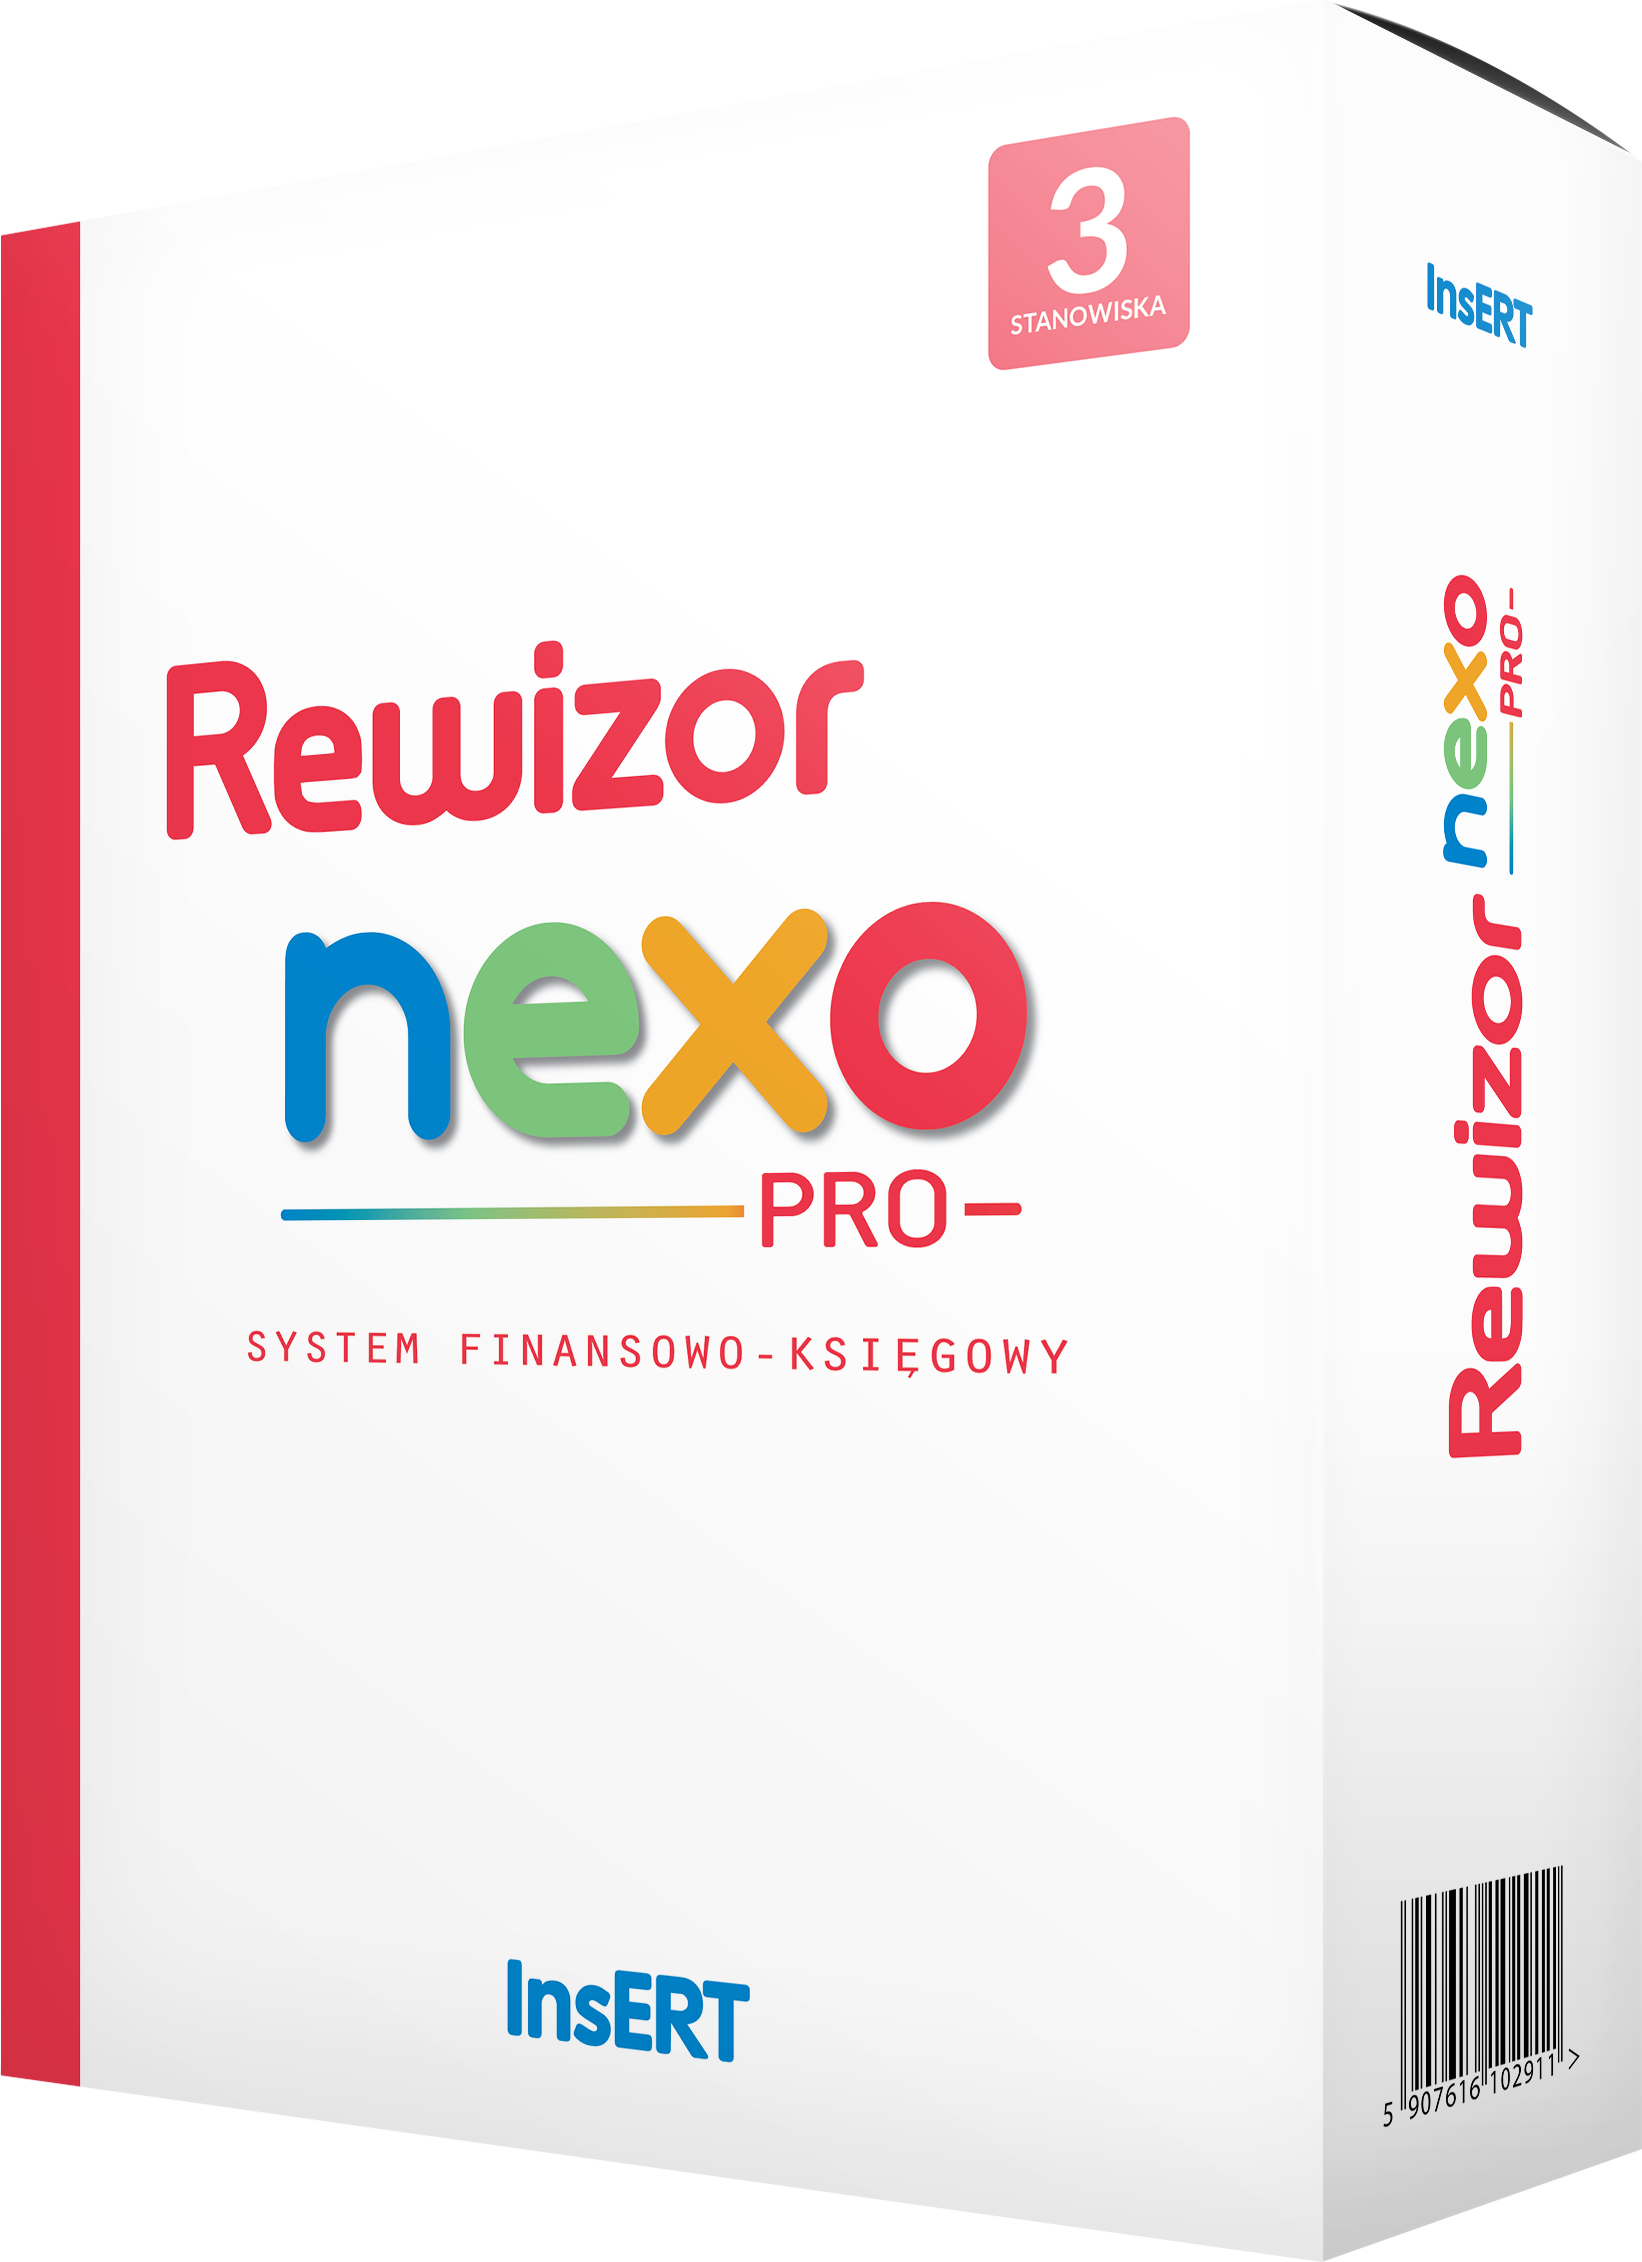 Abonament Rewizor nexo PRO 3 do stanowisk Cena Specjalna